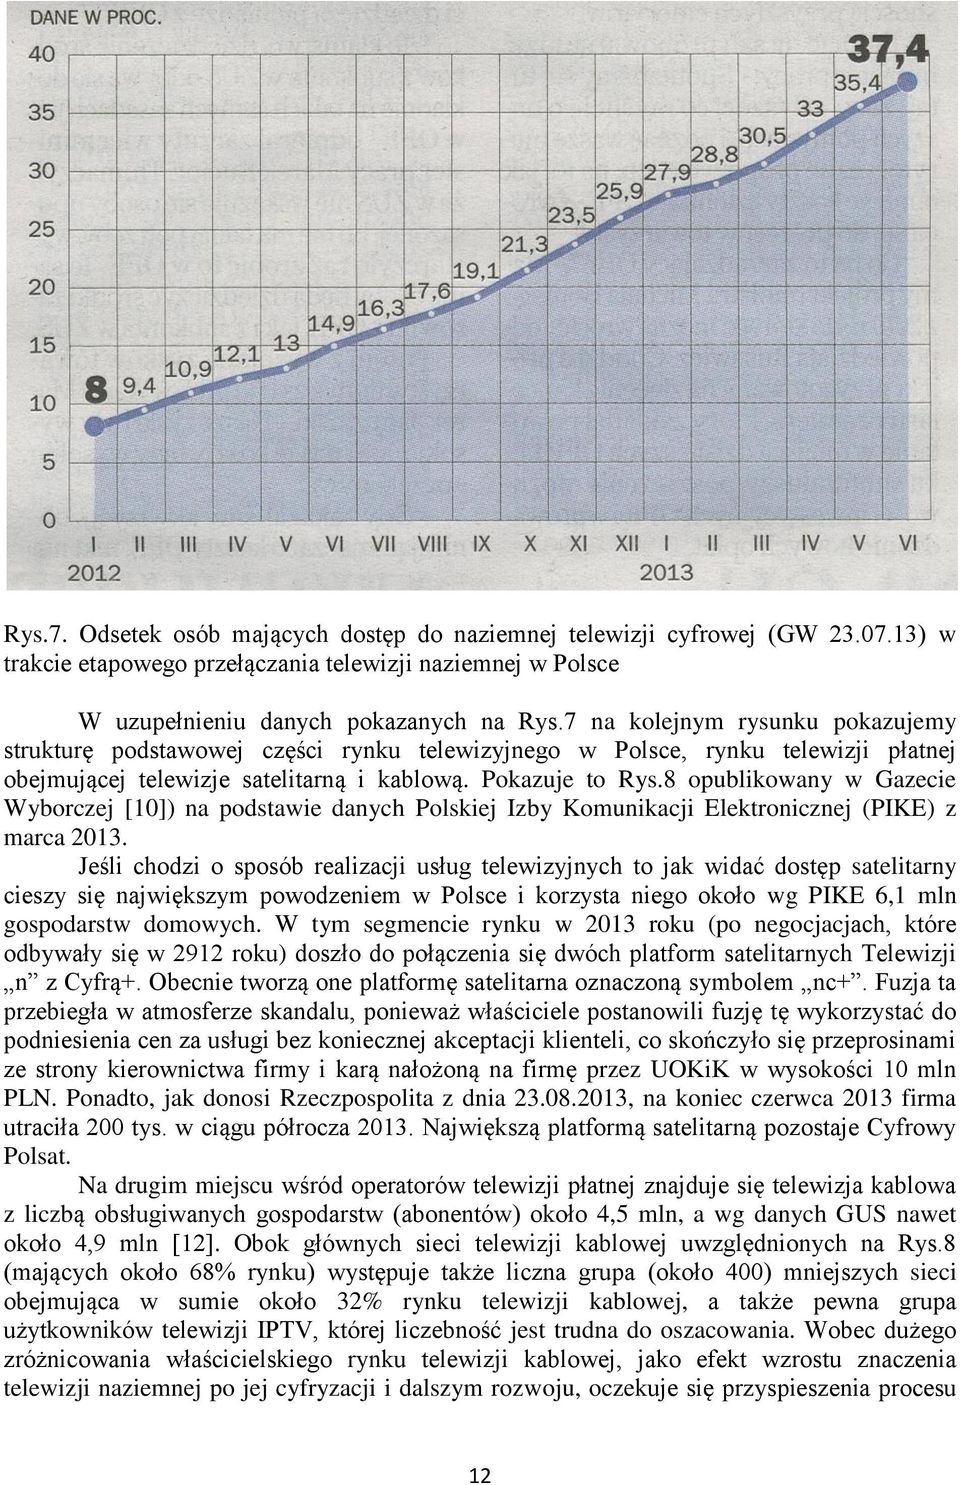 8 opublikowany w Gazecie Wyborczej [10]) na podstawie danych Polskiej Izby Komunikacji Elektronicznej (PIKE) z marca 2013.